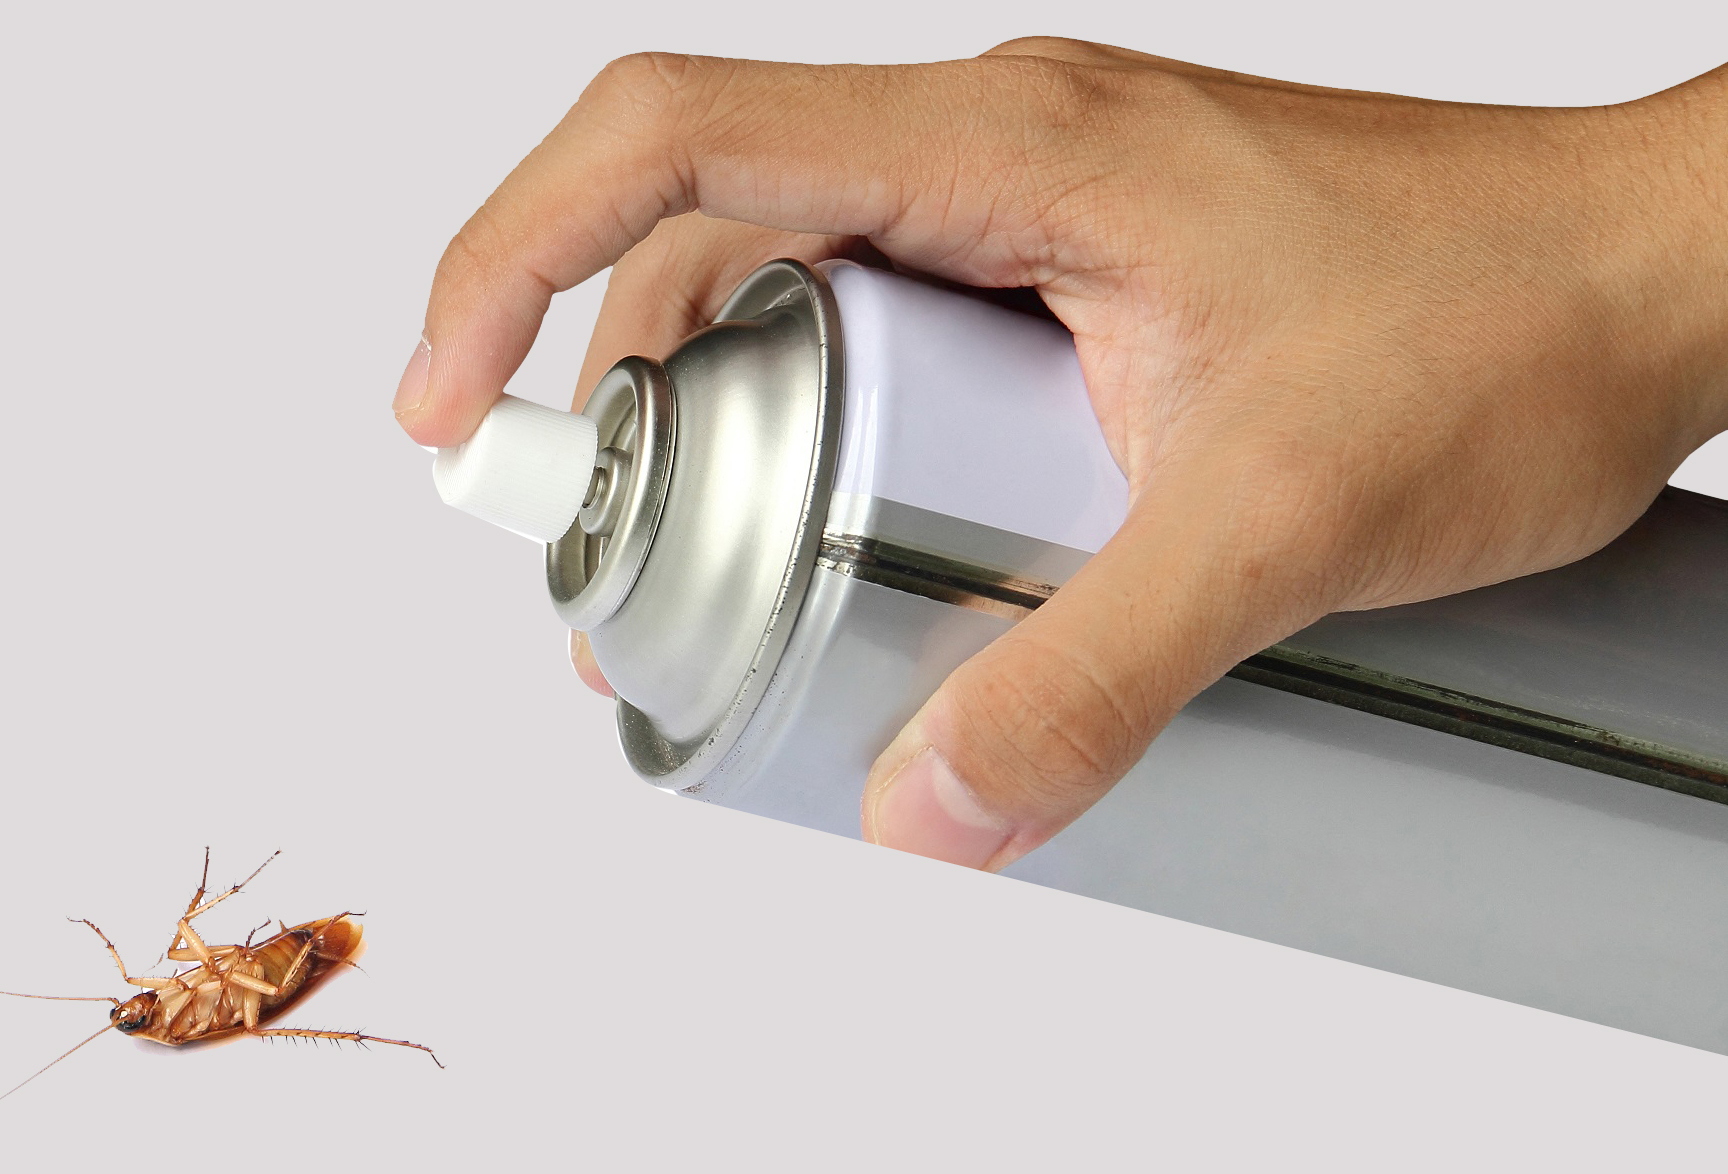 Чего боятся осы: все способы отпугнуть опасных насекомых